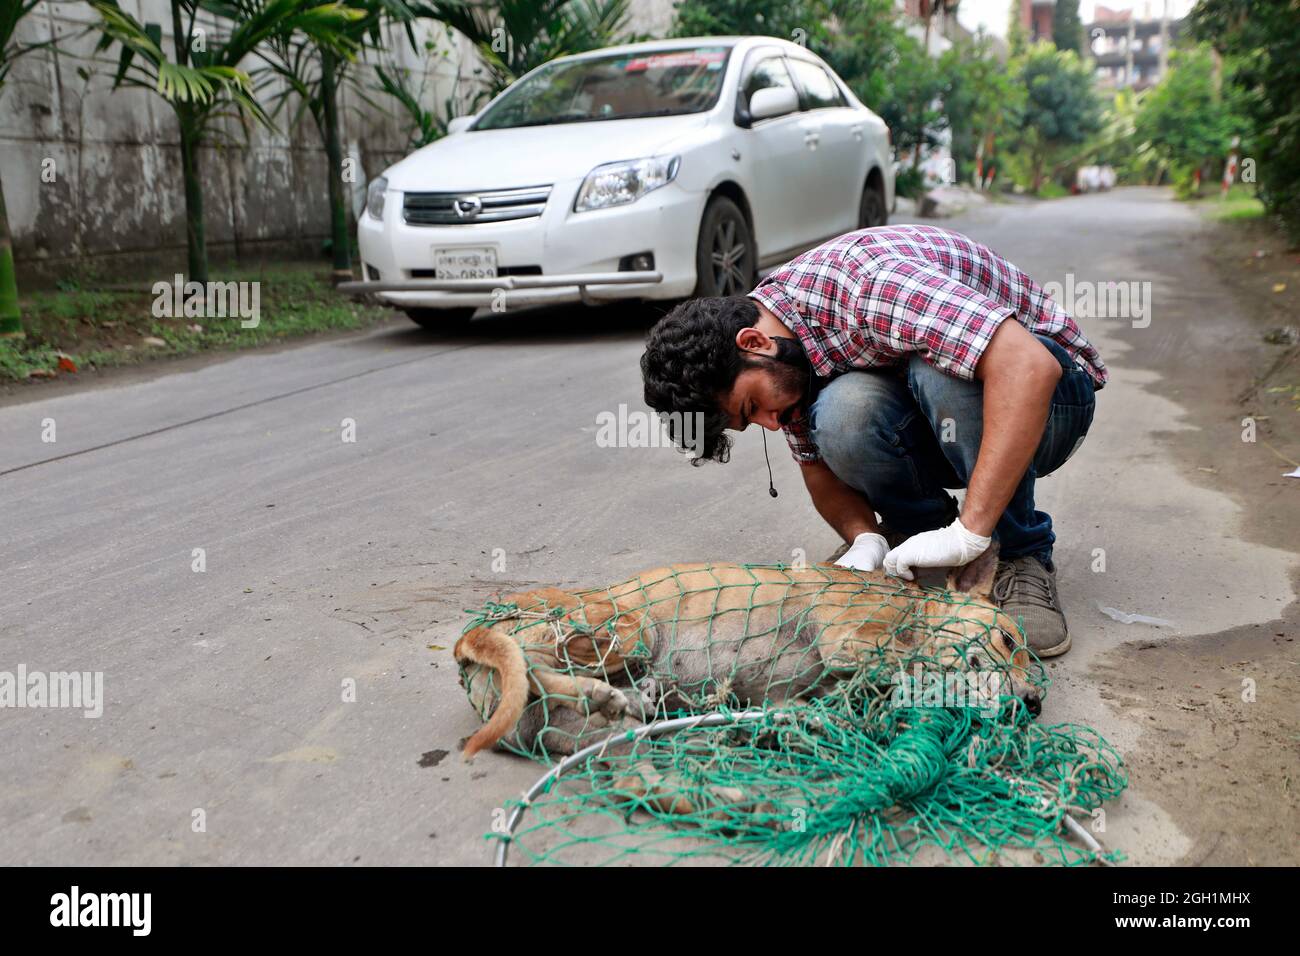 Dhaka, Bangladesh - 04 septembre 2021 : Abu Sufian, un jeune homme, traite et vaccine les chiens de rue à Dhaka de sa propre initiative. Banque D'Images